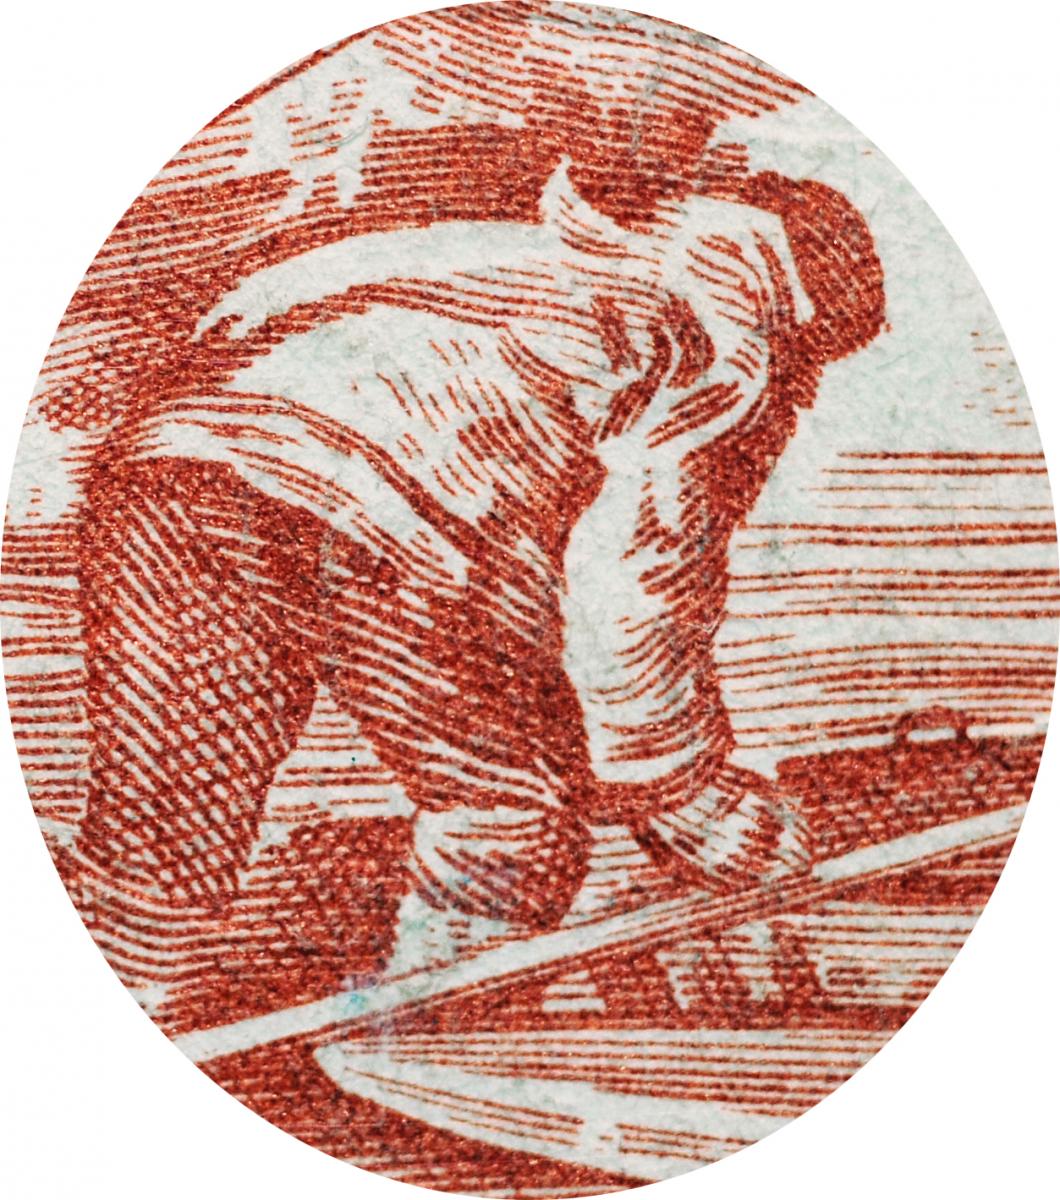 Engraving of man bent over a kayak.